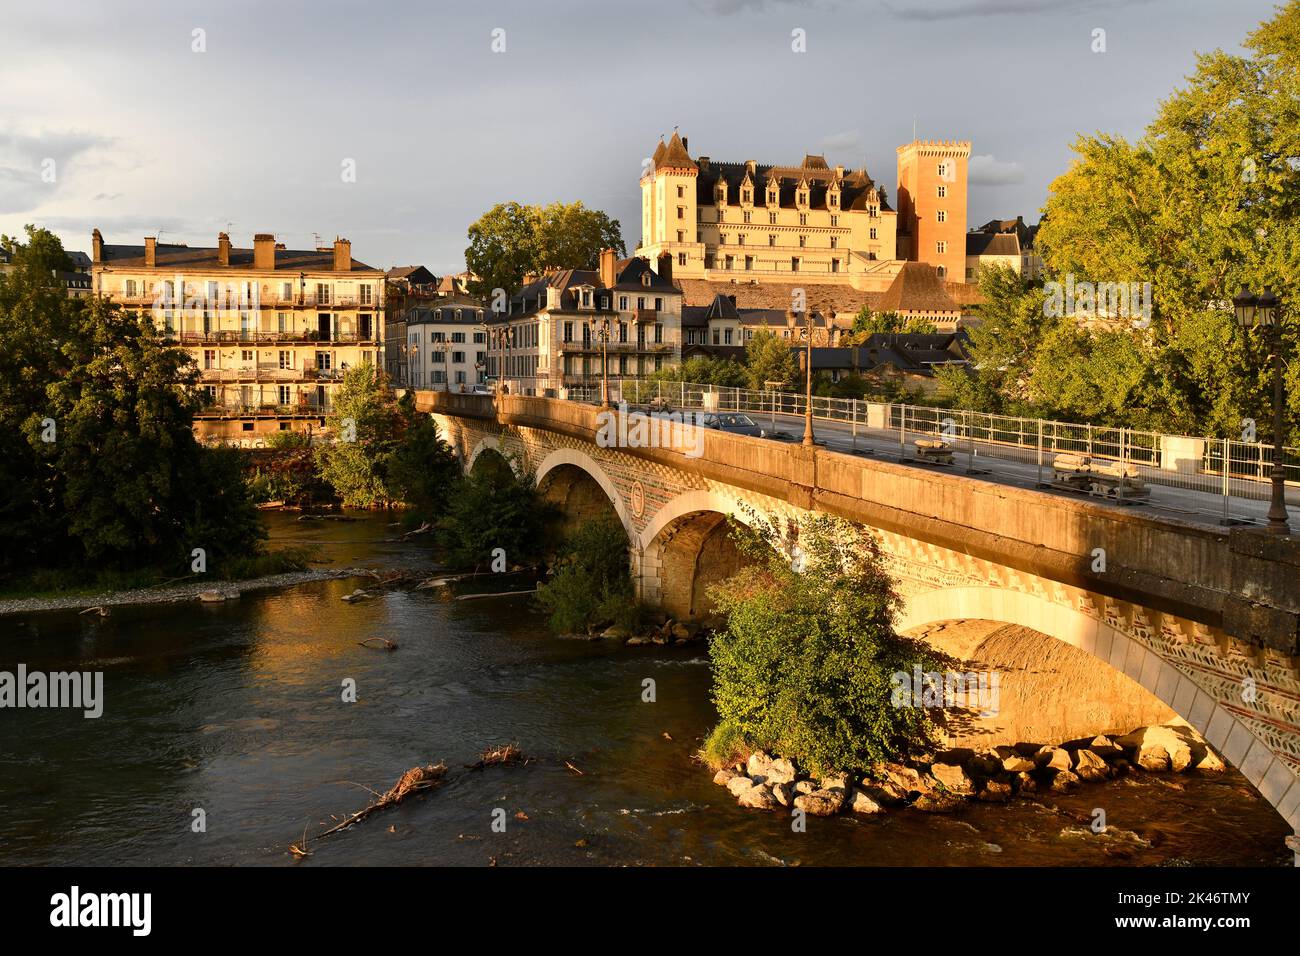 Pau nel sud-ovest della Francia con Chateau de Pau e il fiume Gave de Pau. Foto Stock